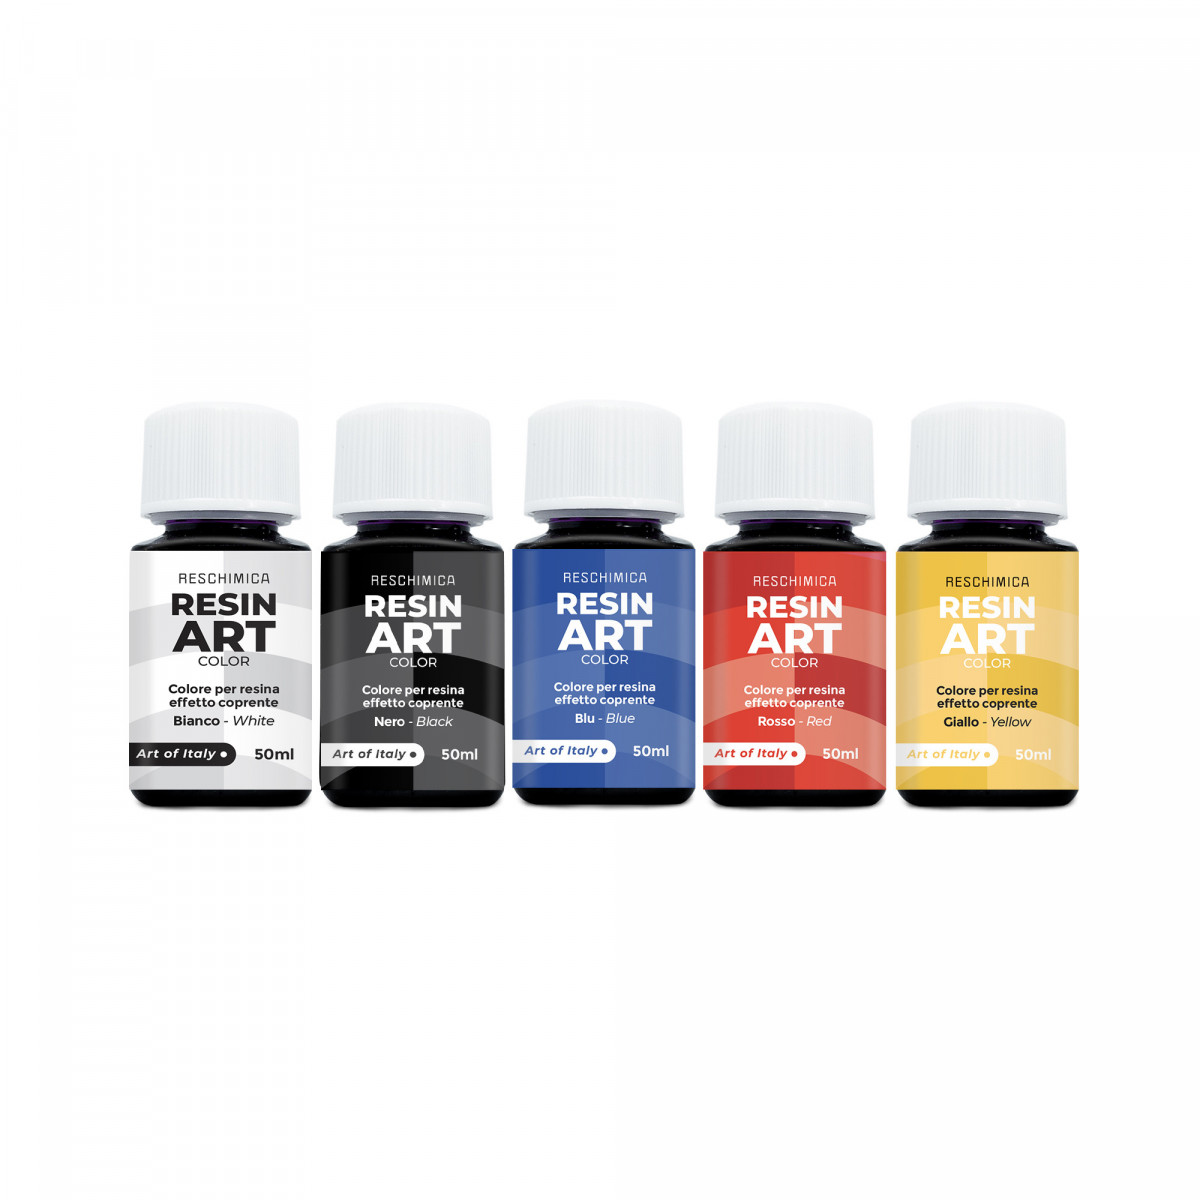 RESIN ART COLOR - Colori intensi e brillanti per resina in 5 colorazioni da 50ml (effetto coprente)